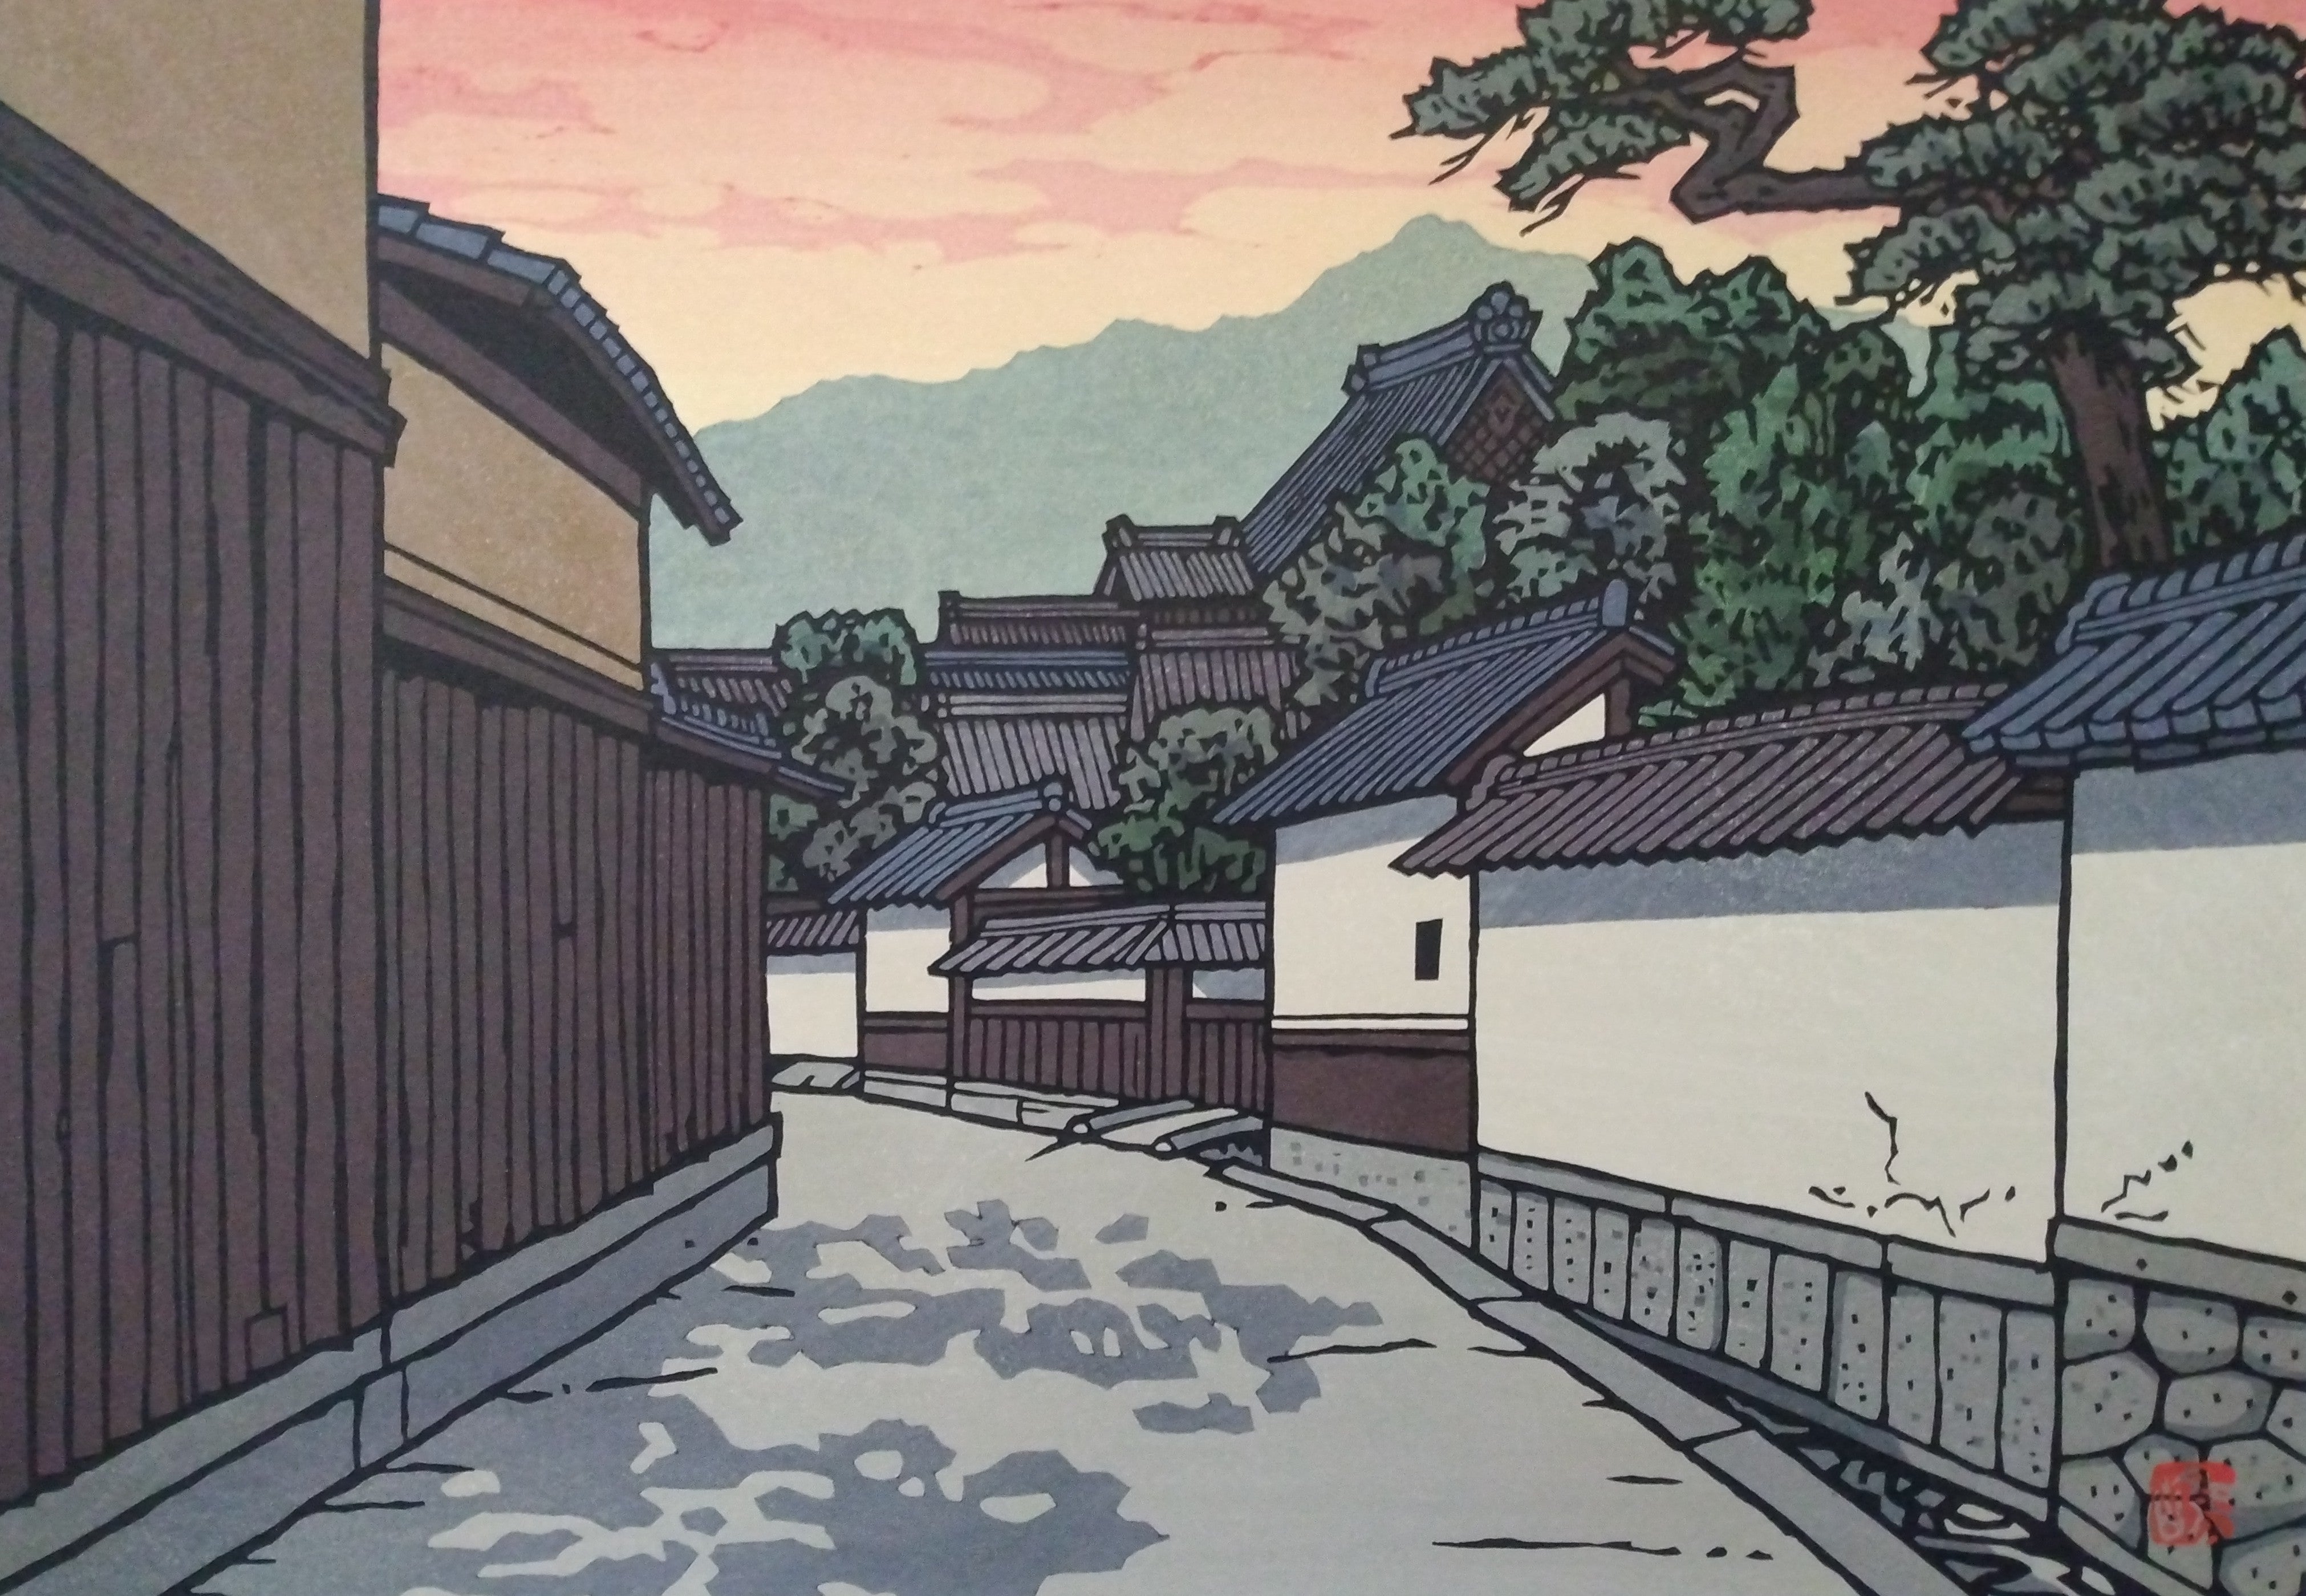 Woodblock Print by Katsuyuki Nishijima, "Evening in Gokashou" (Gokasho no Yuu)